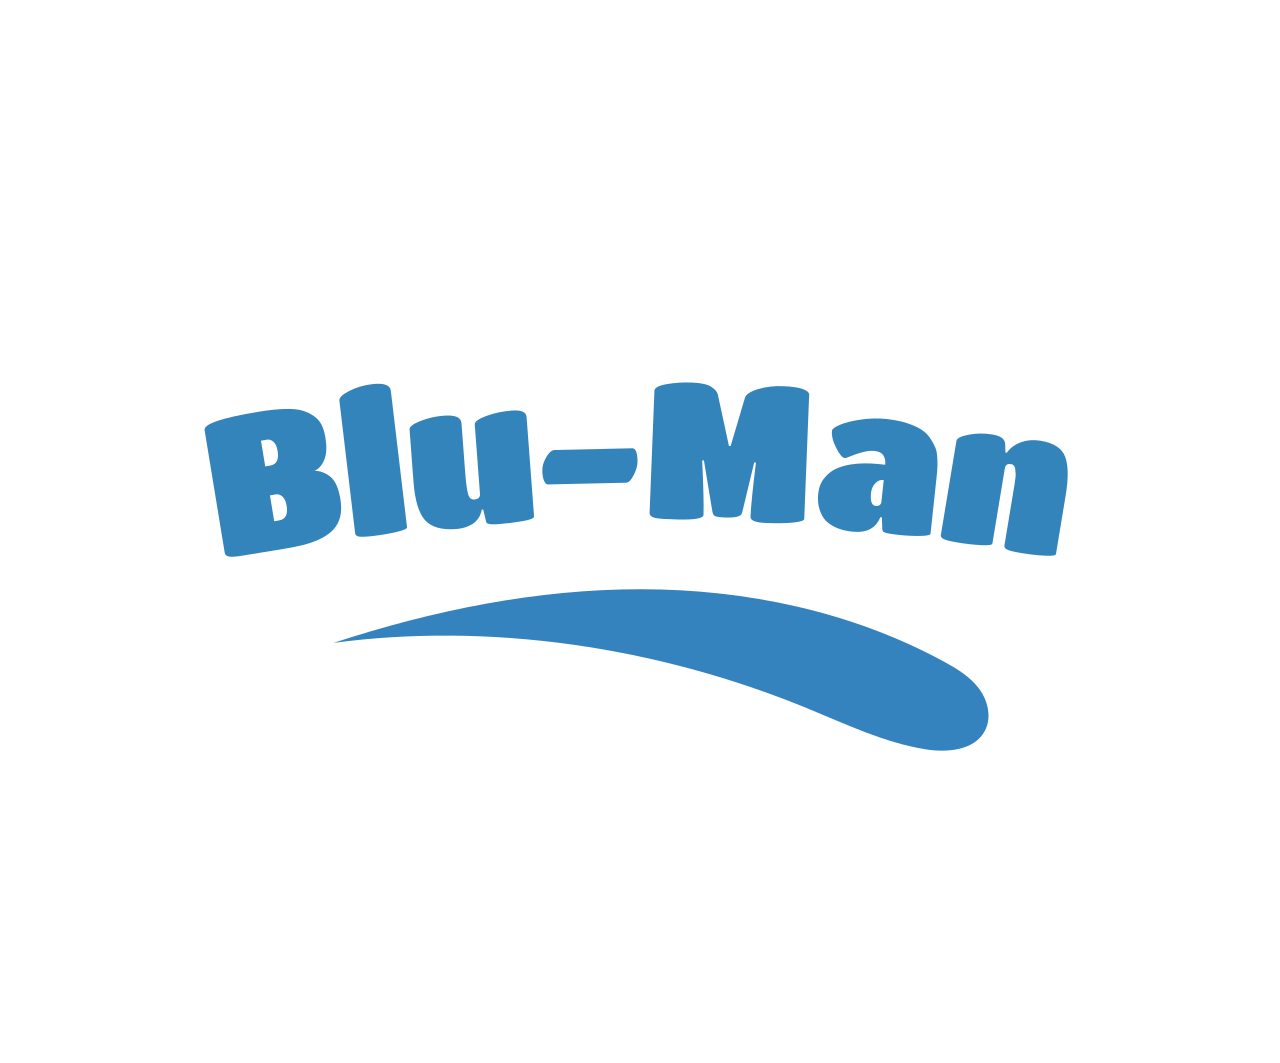 Blu-Man's logo